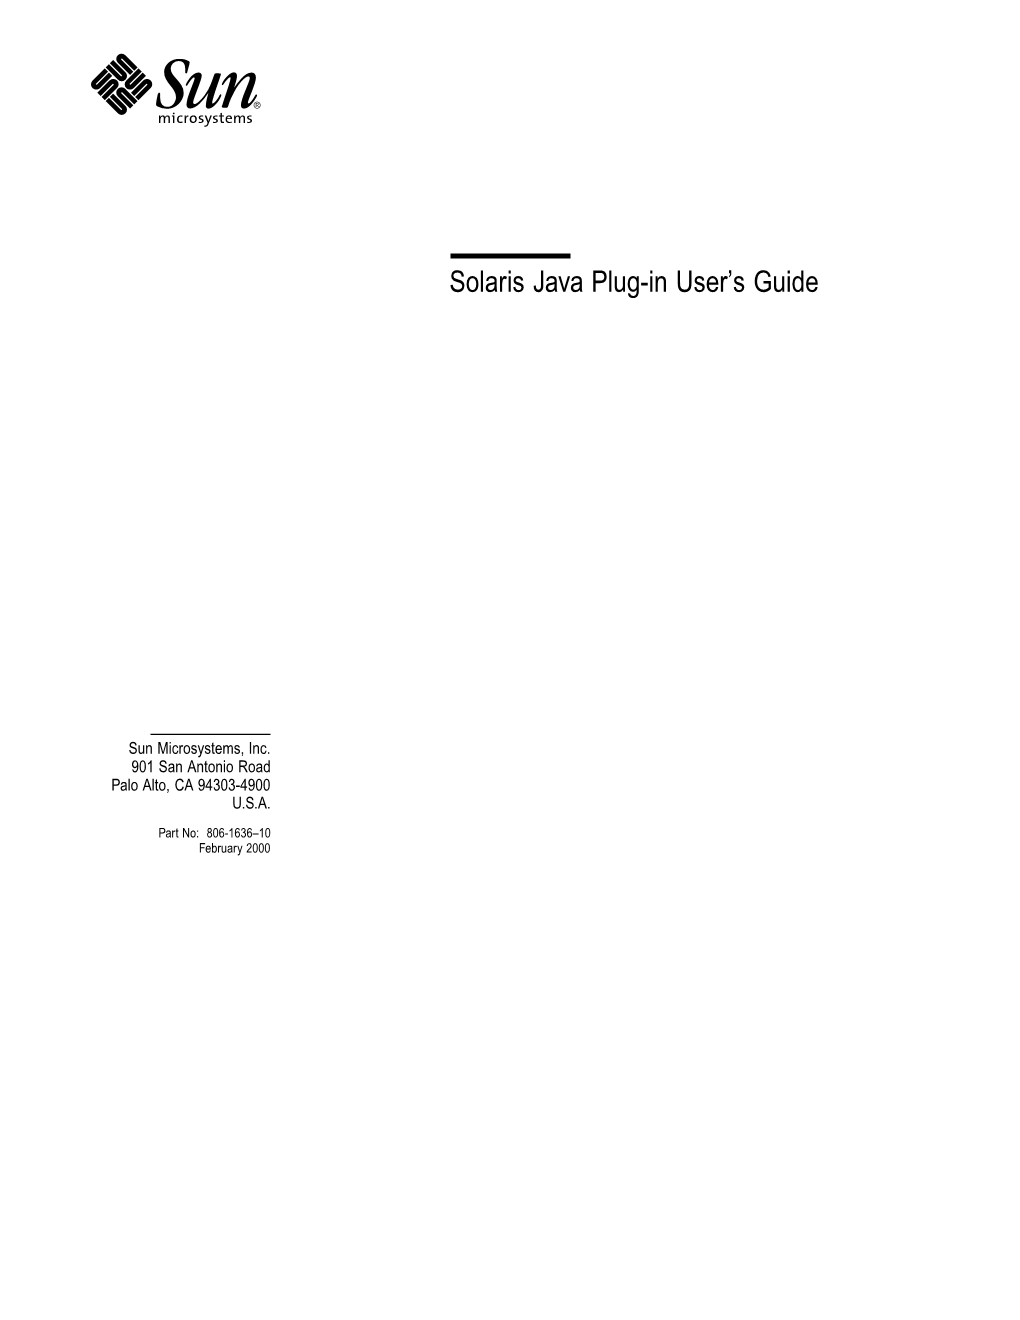 Solaris Java Plug-In User's Guide